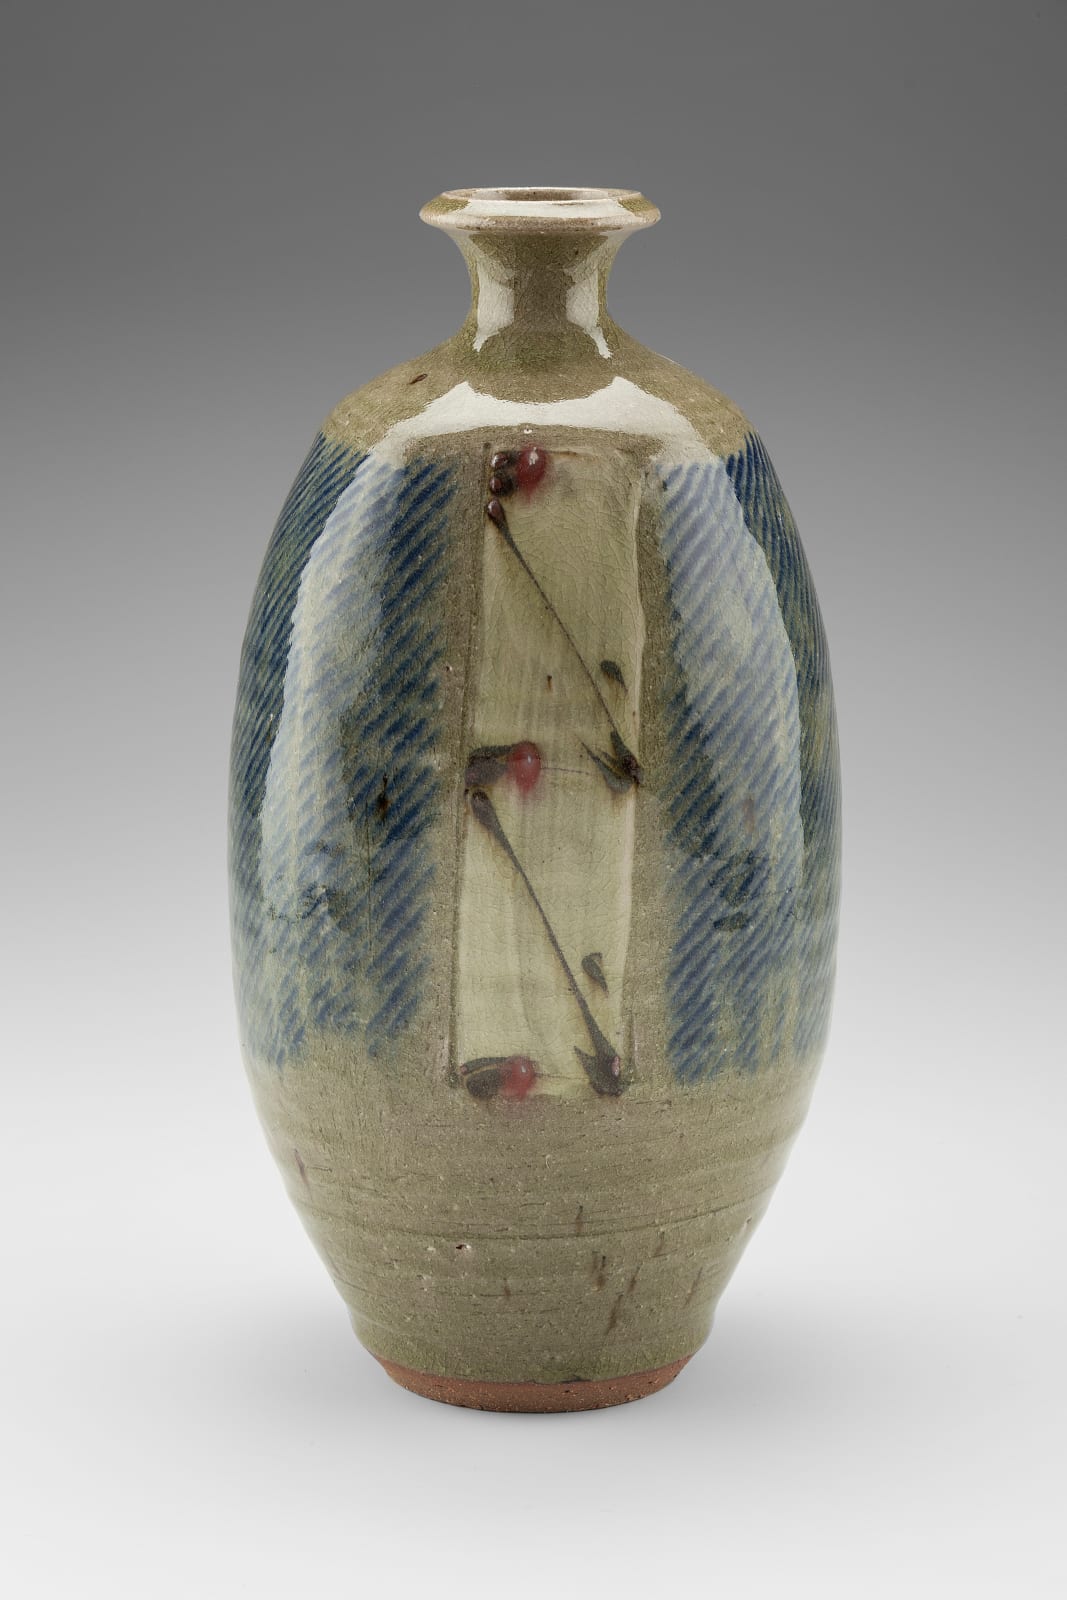 WILLIAM PLUMPTRE, Paddled vase